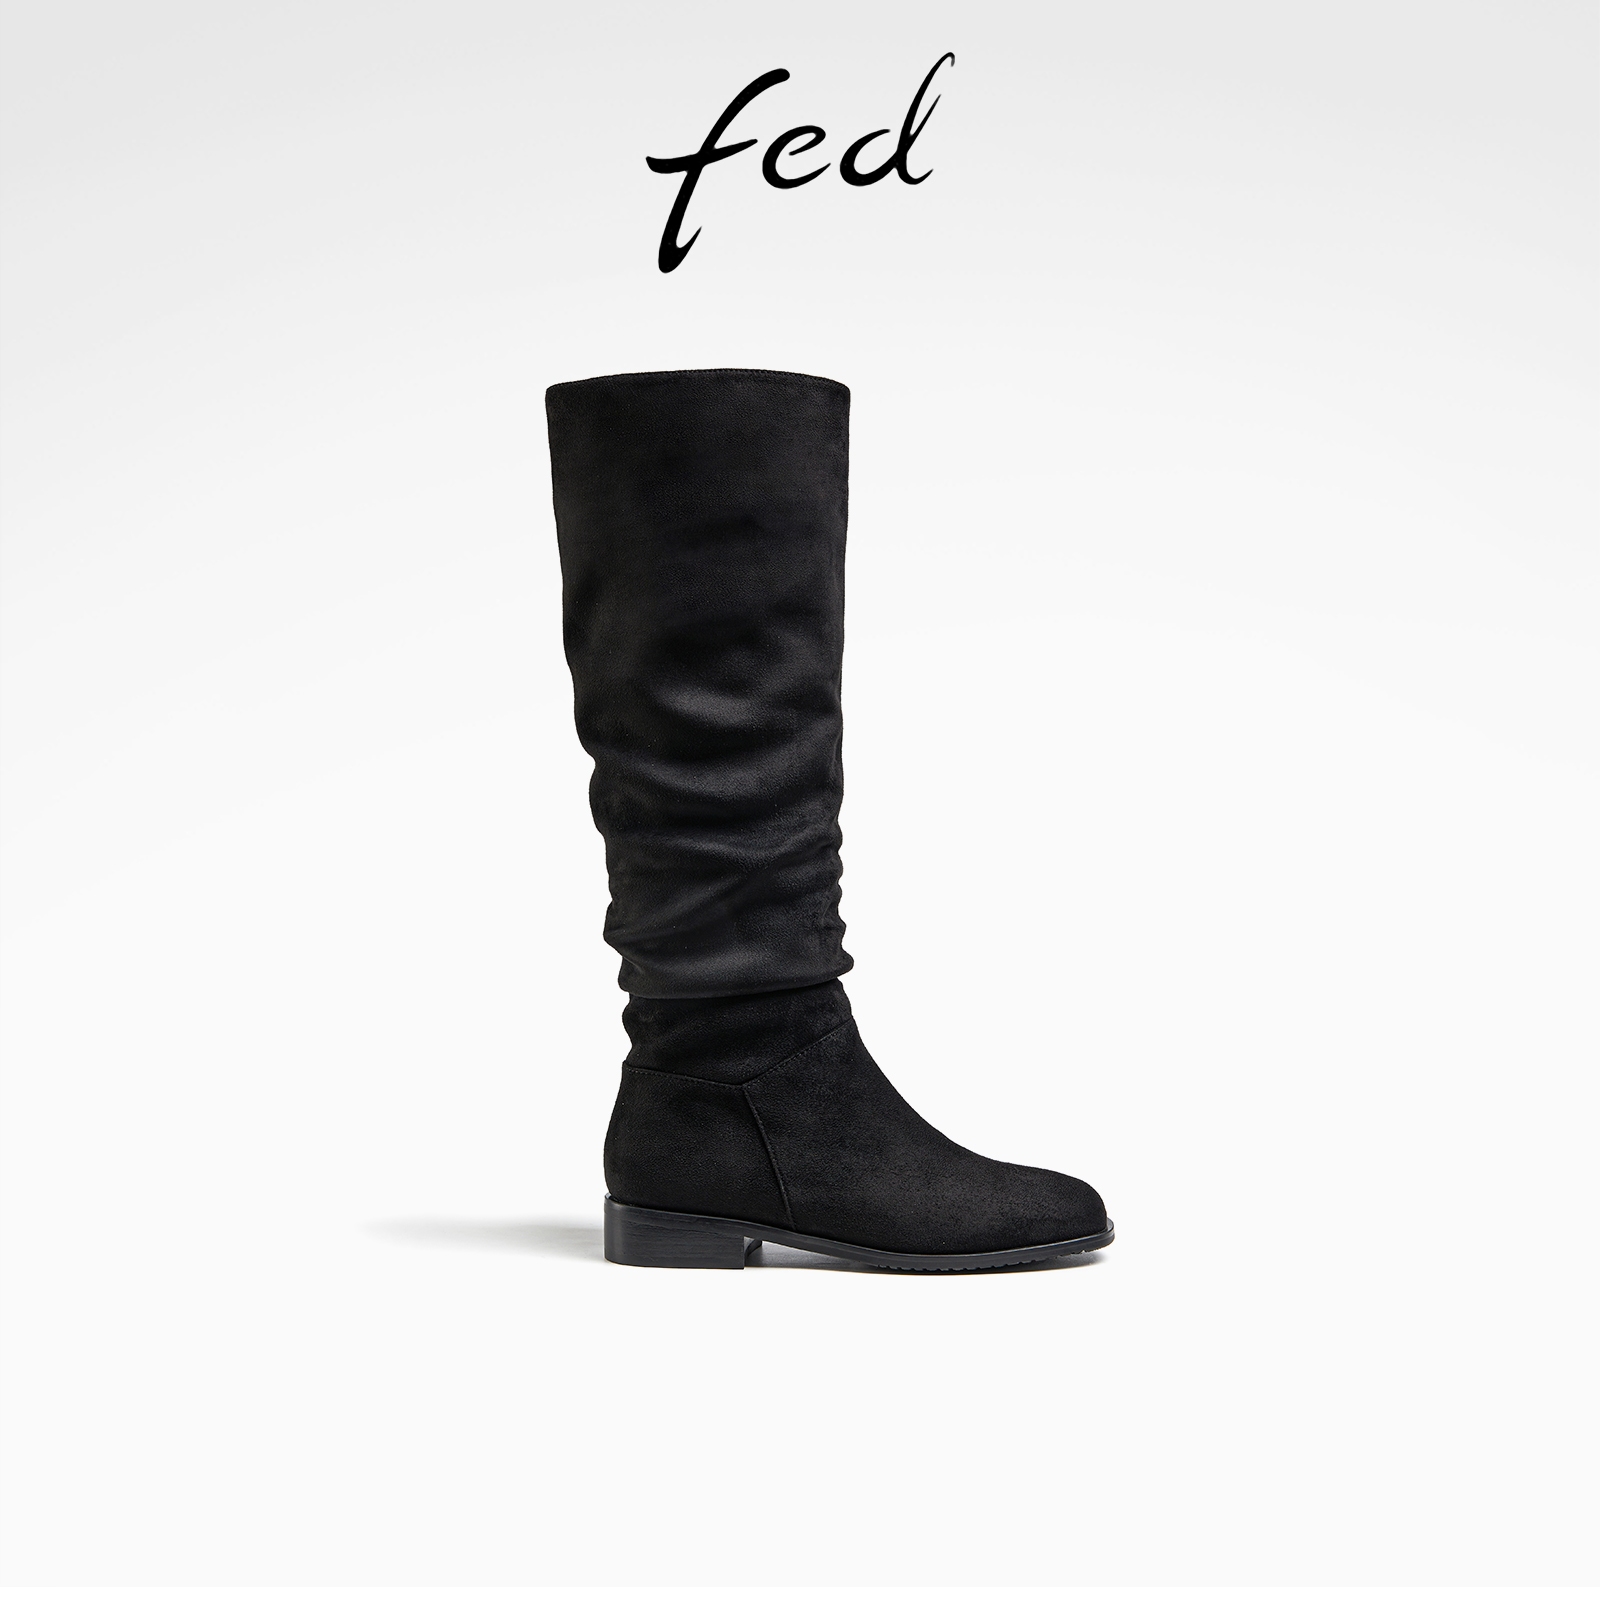 fed黑色长筒靴冬季新款靴子绒面堆堆靴平底时装靴女款R1027-ZF330